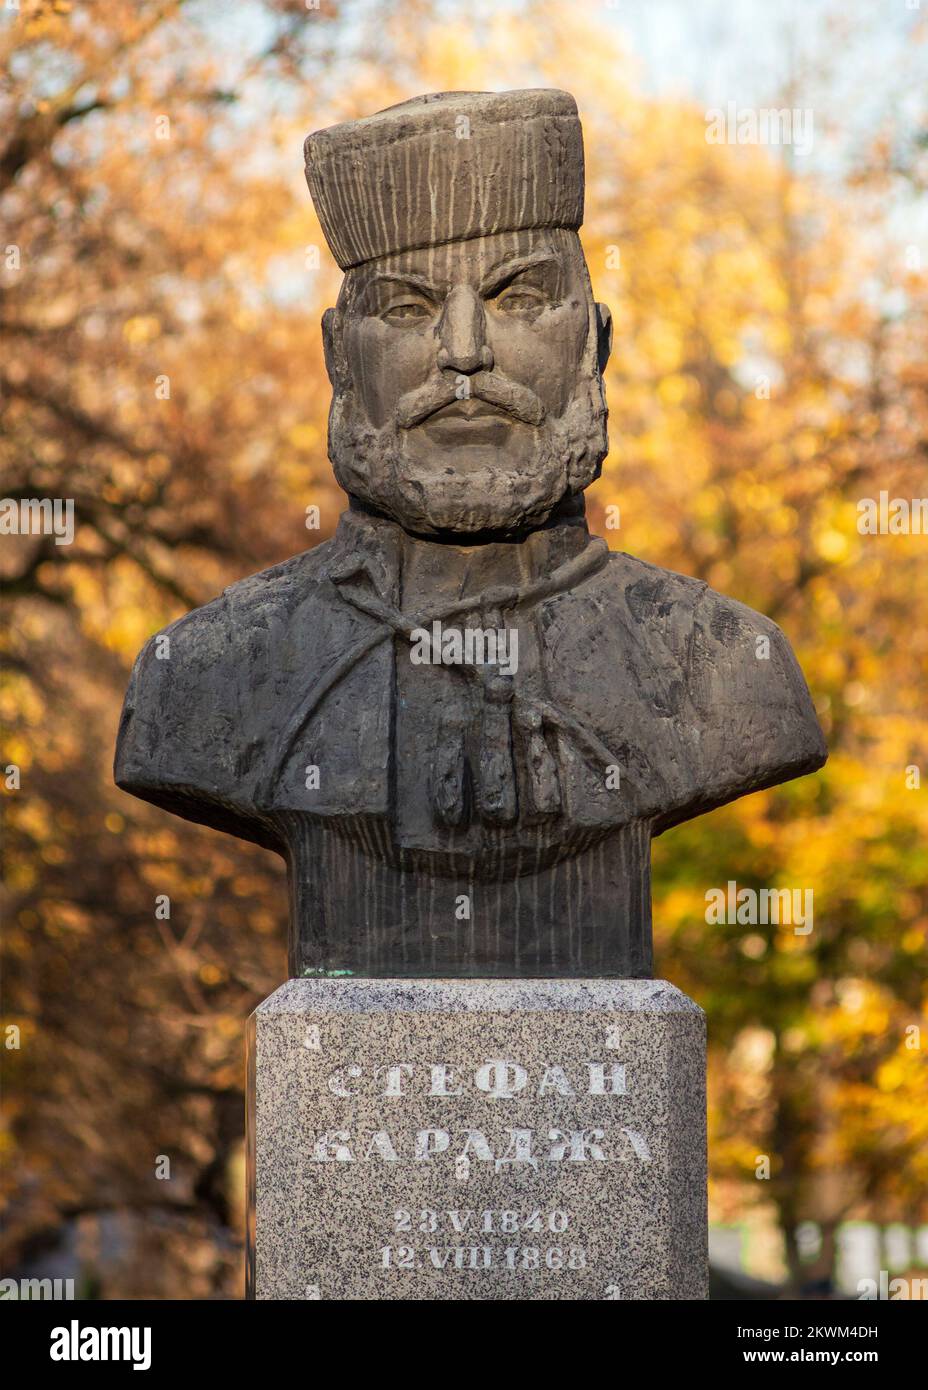 Busto di Stefan Karadzha come capo rivoluzionario e ribellione bulgaro prominente contro l'Impero Ottomano. Sofia, Bulgaria Foto Stock